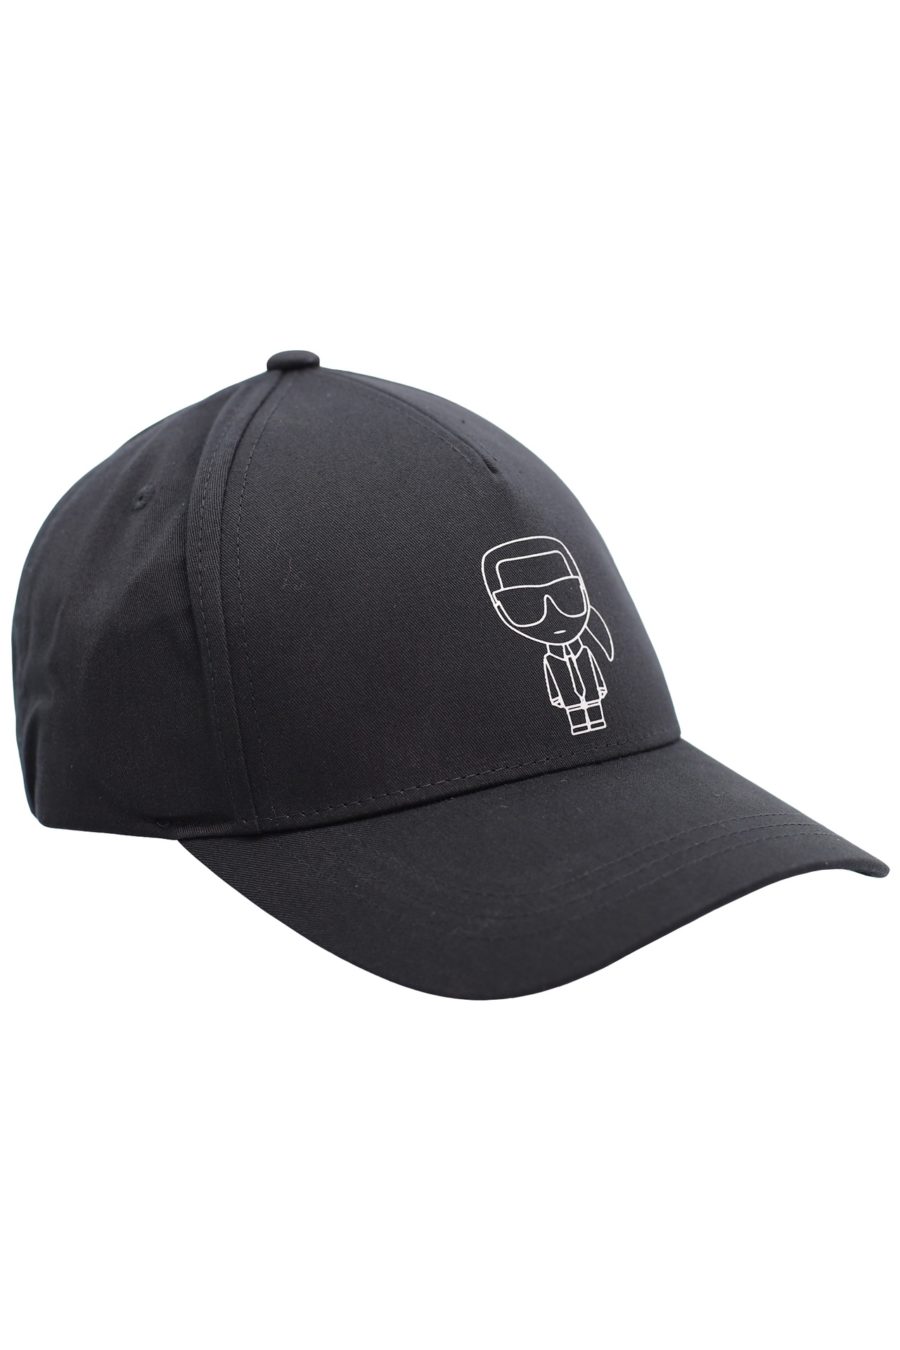 Black cap with silver "Karl" - f10b71060c3131f574a35a8684de4c540d4adb57